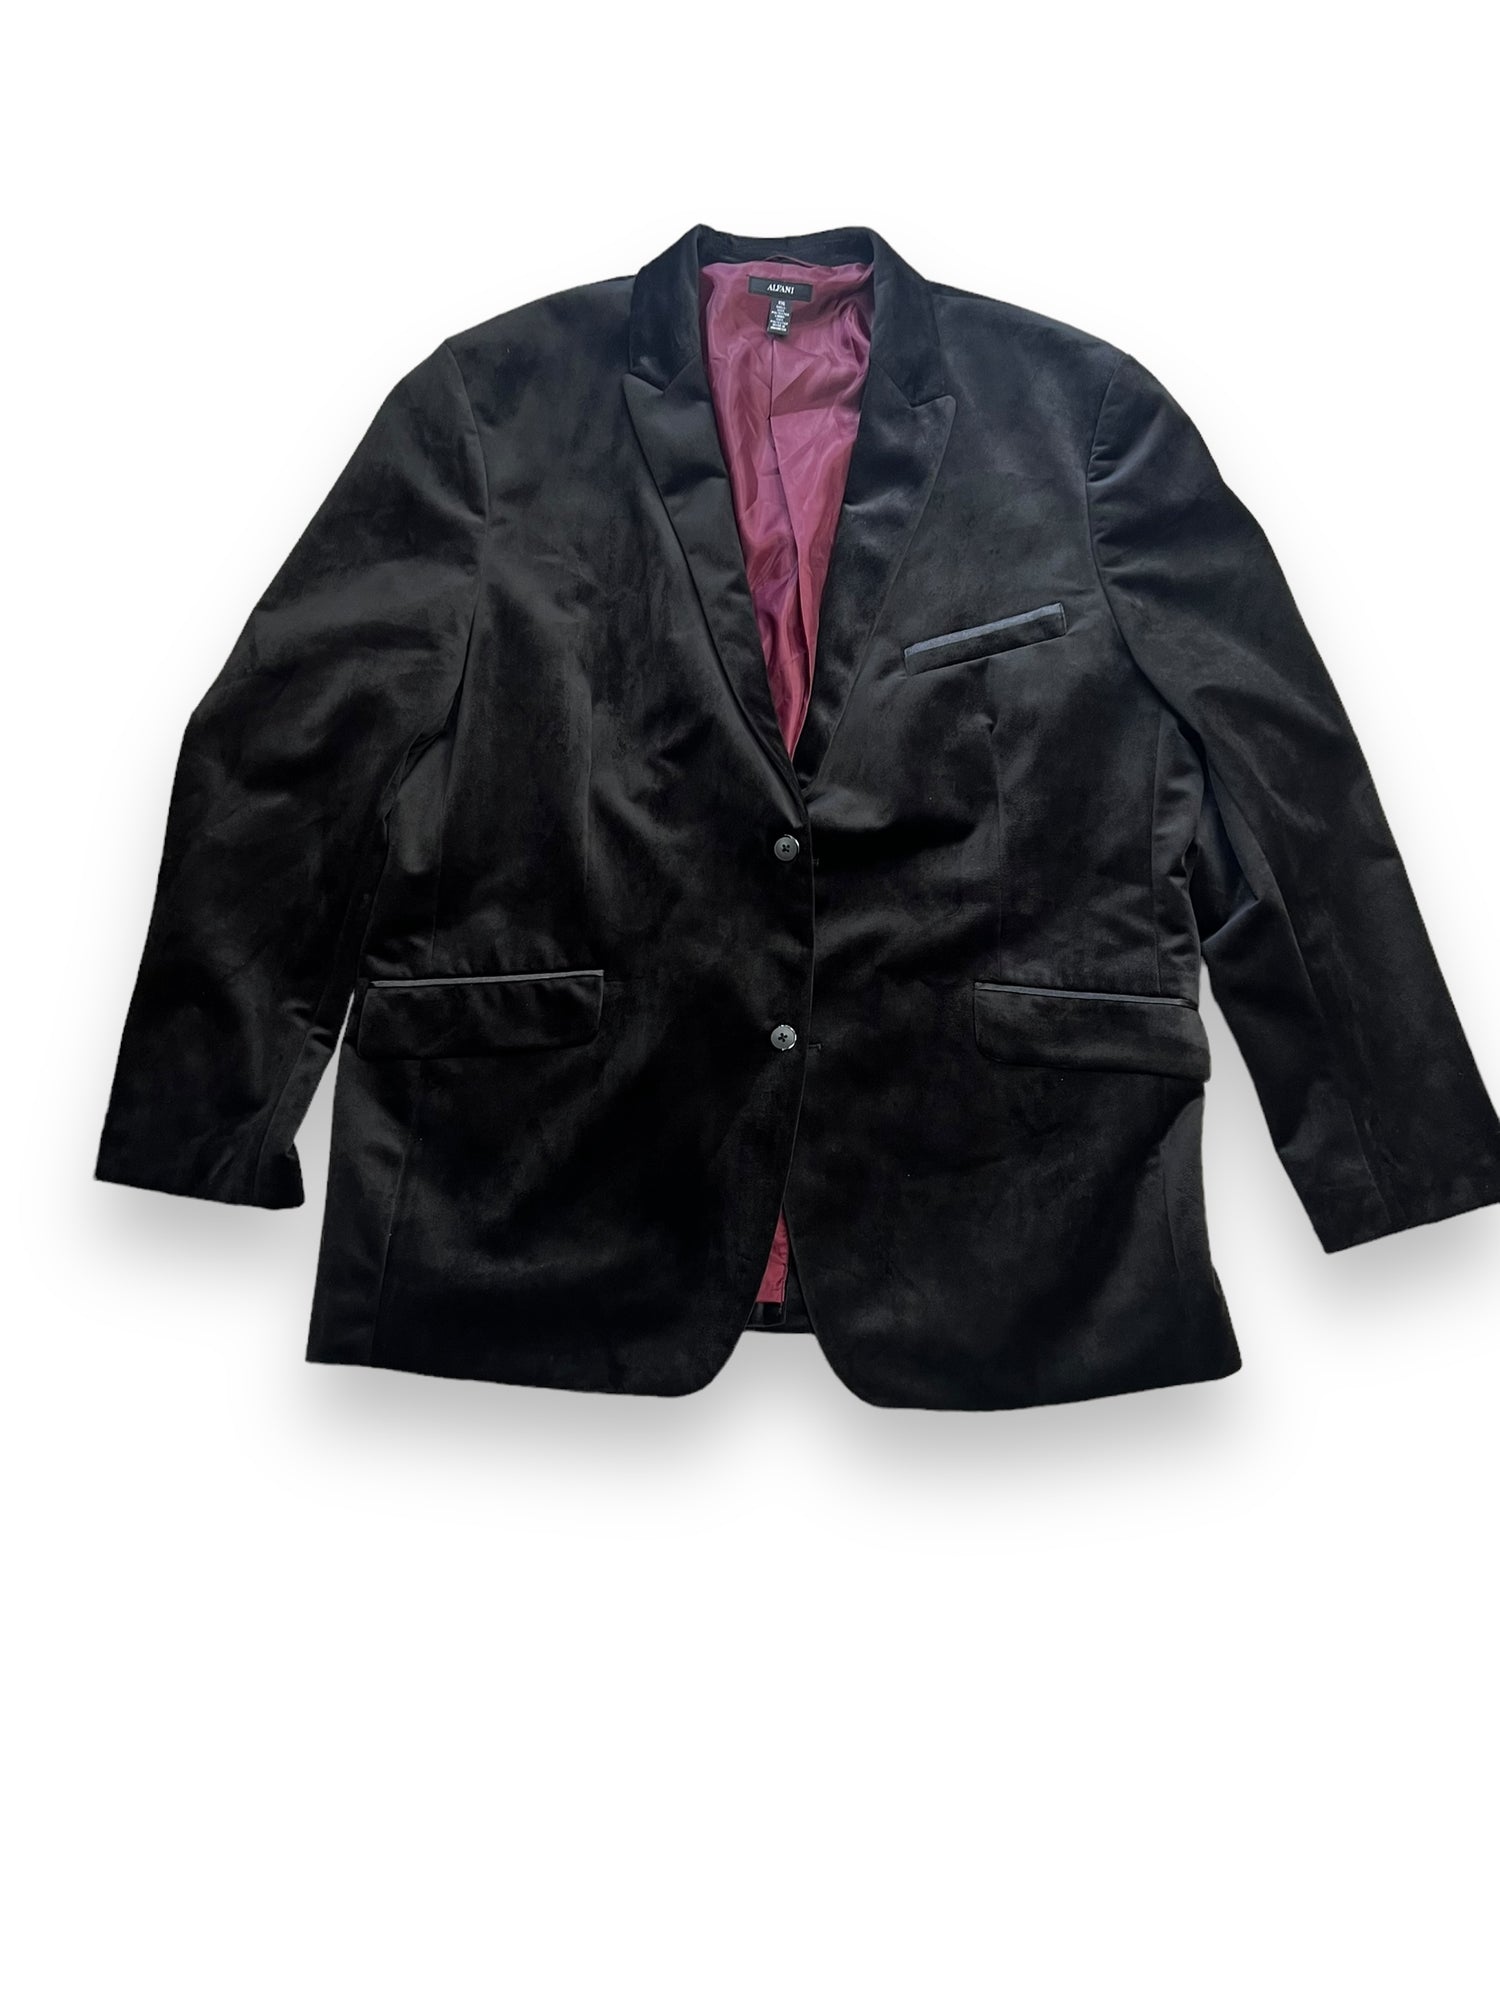 Men's Coats/ Jackets